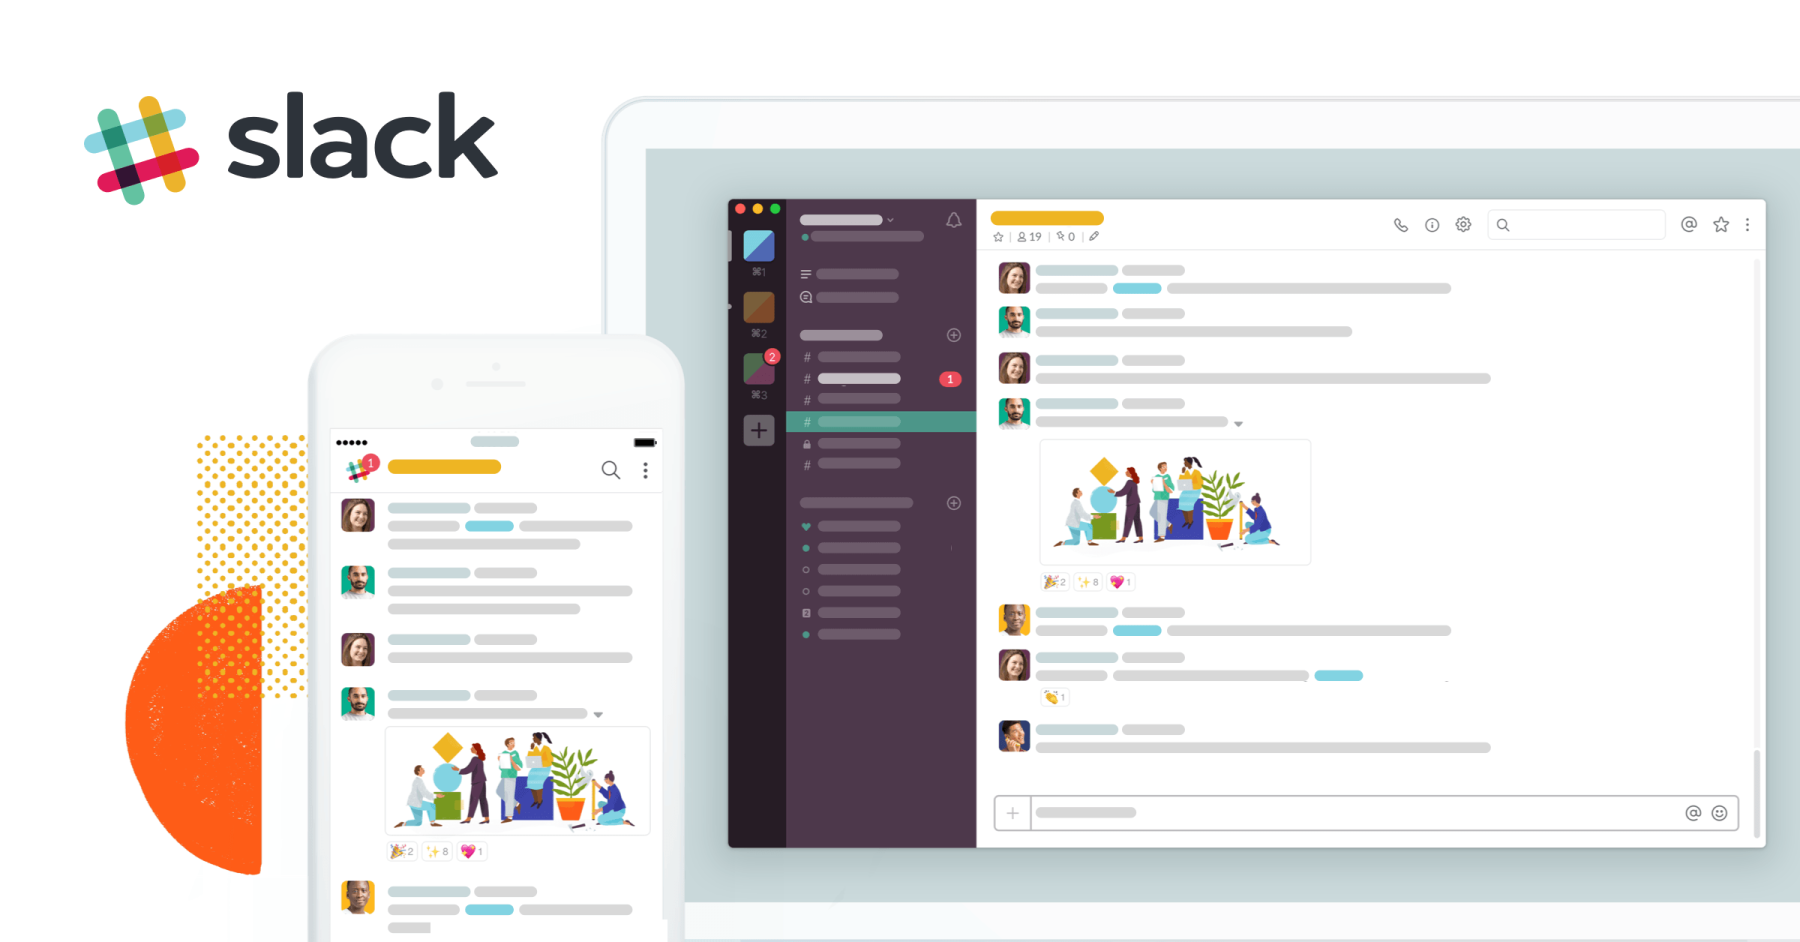 Slack simplifies its platform